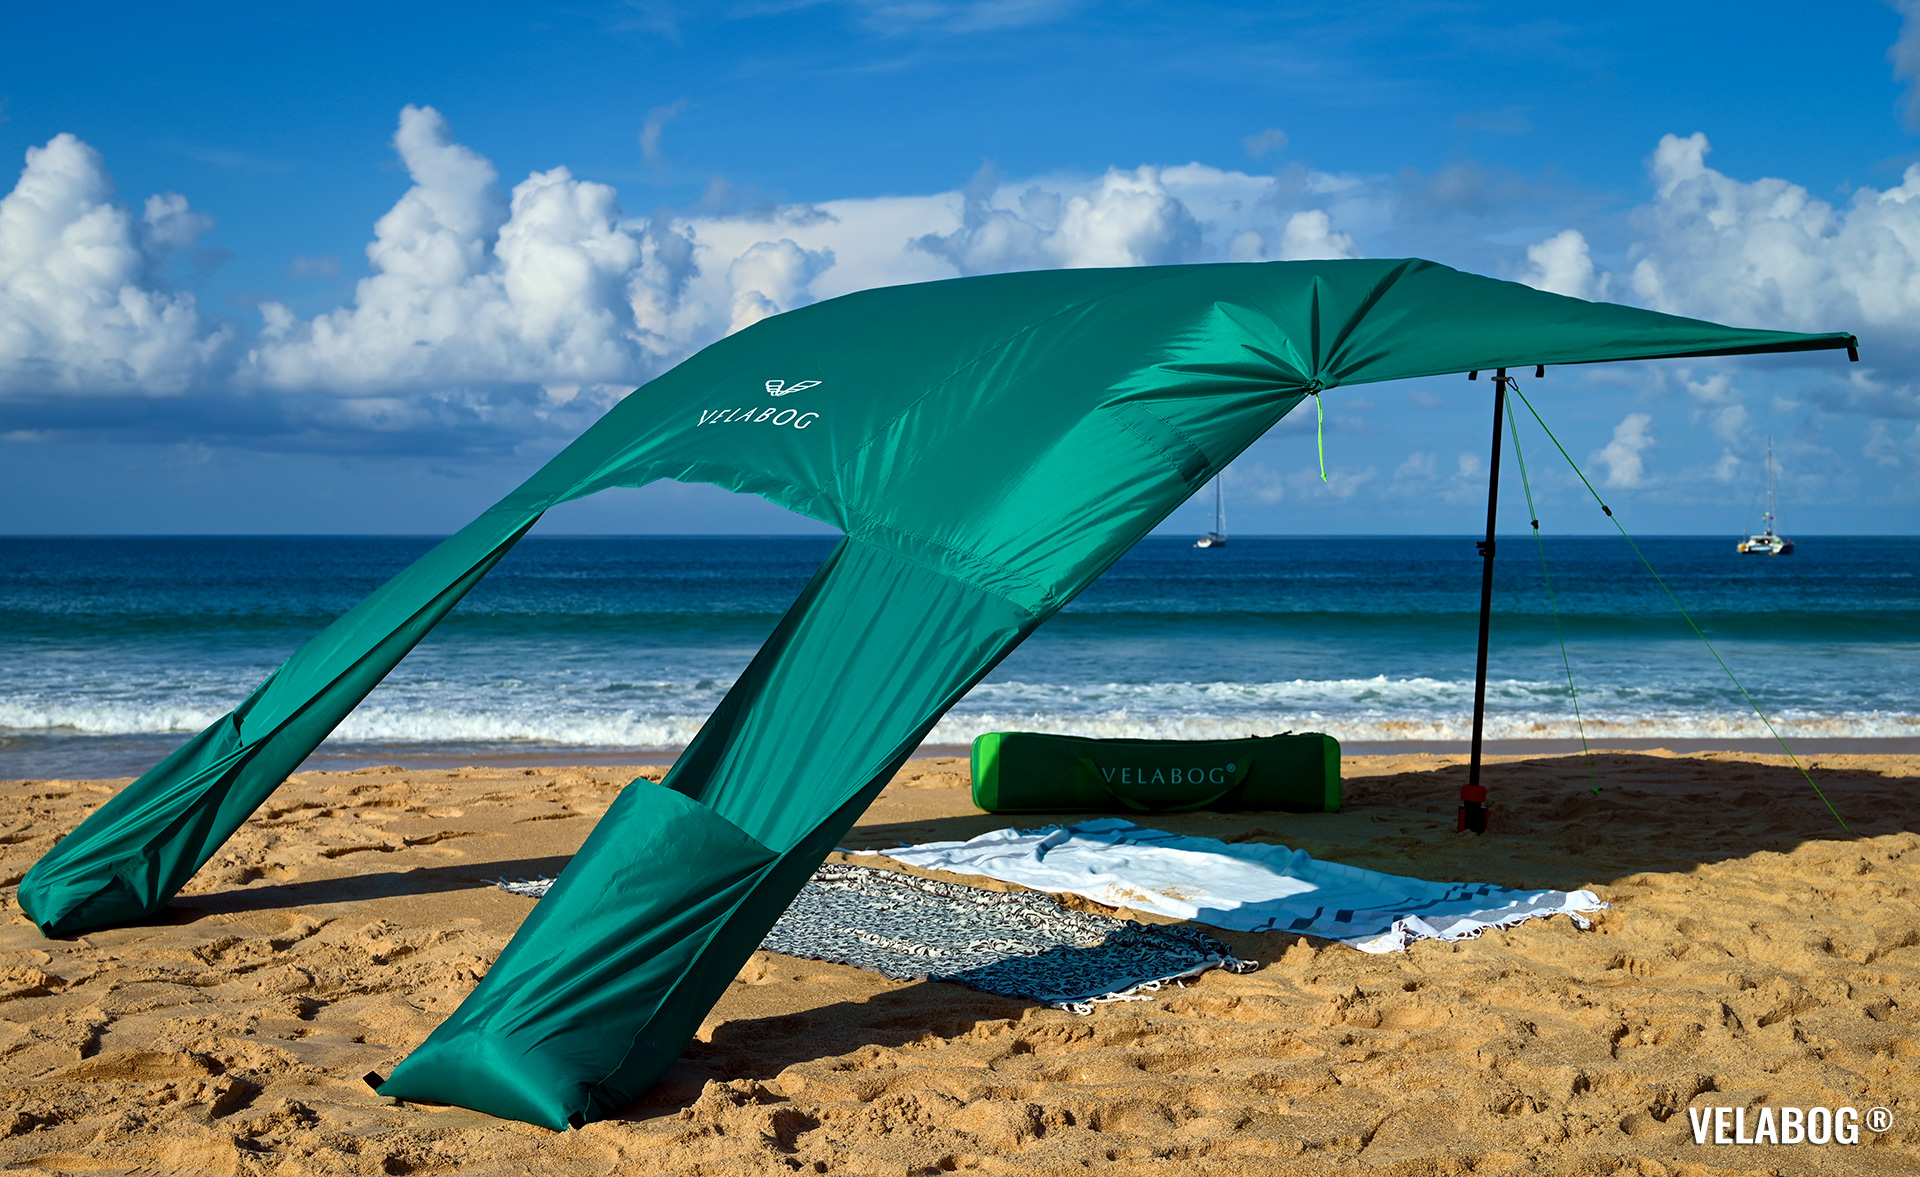 Солнечный пляжный парус навес Velabog Breeze. Вариант установки А - от слабого до сильного ветра. Цвет зелёный. Лучшая защита от солнца на пляже. | Velabog ©